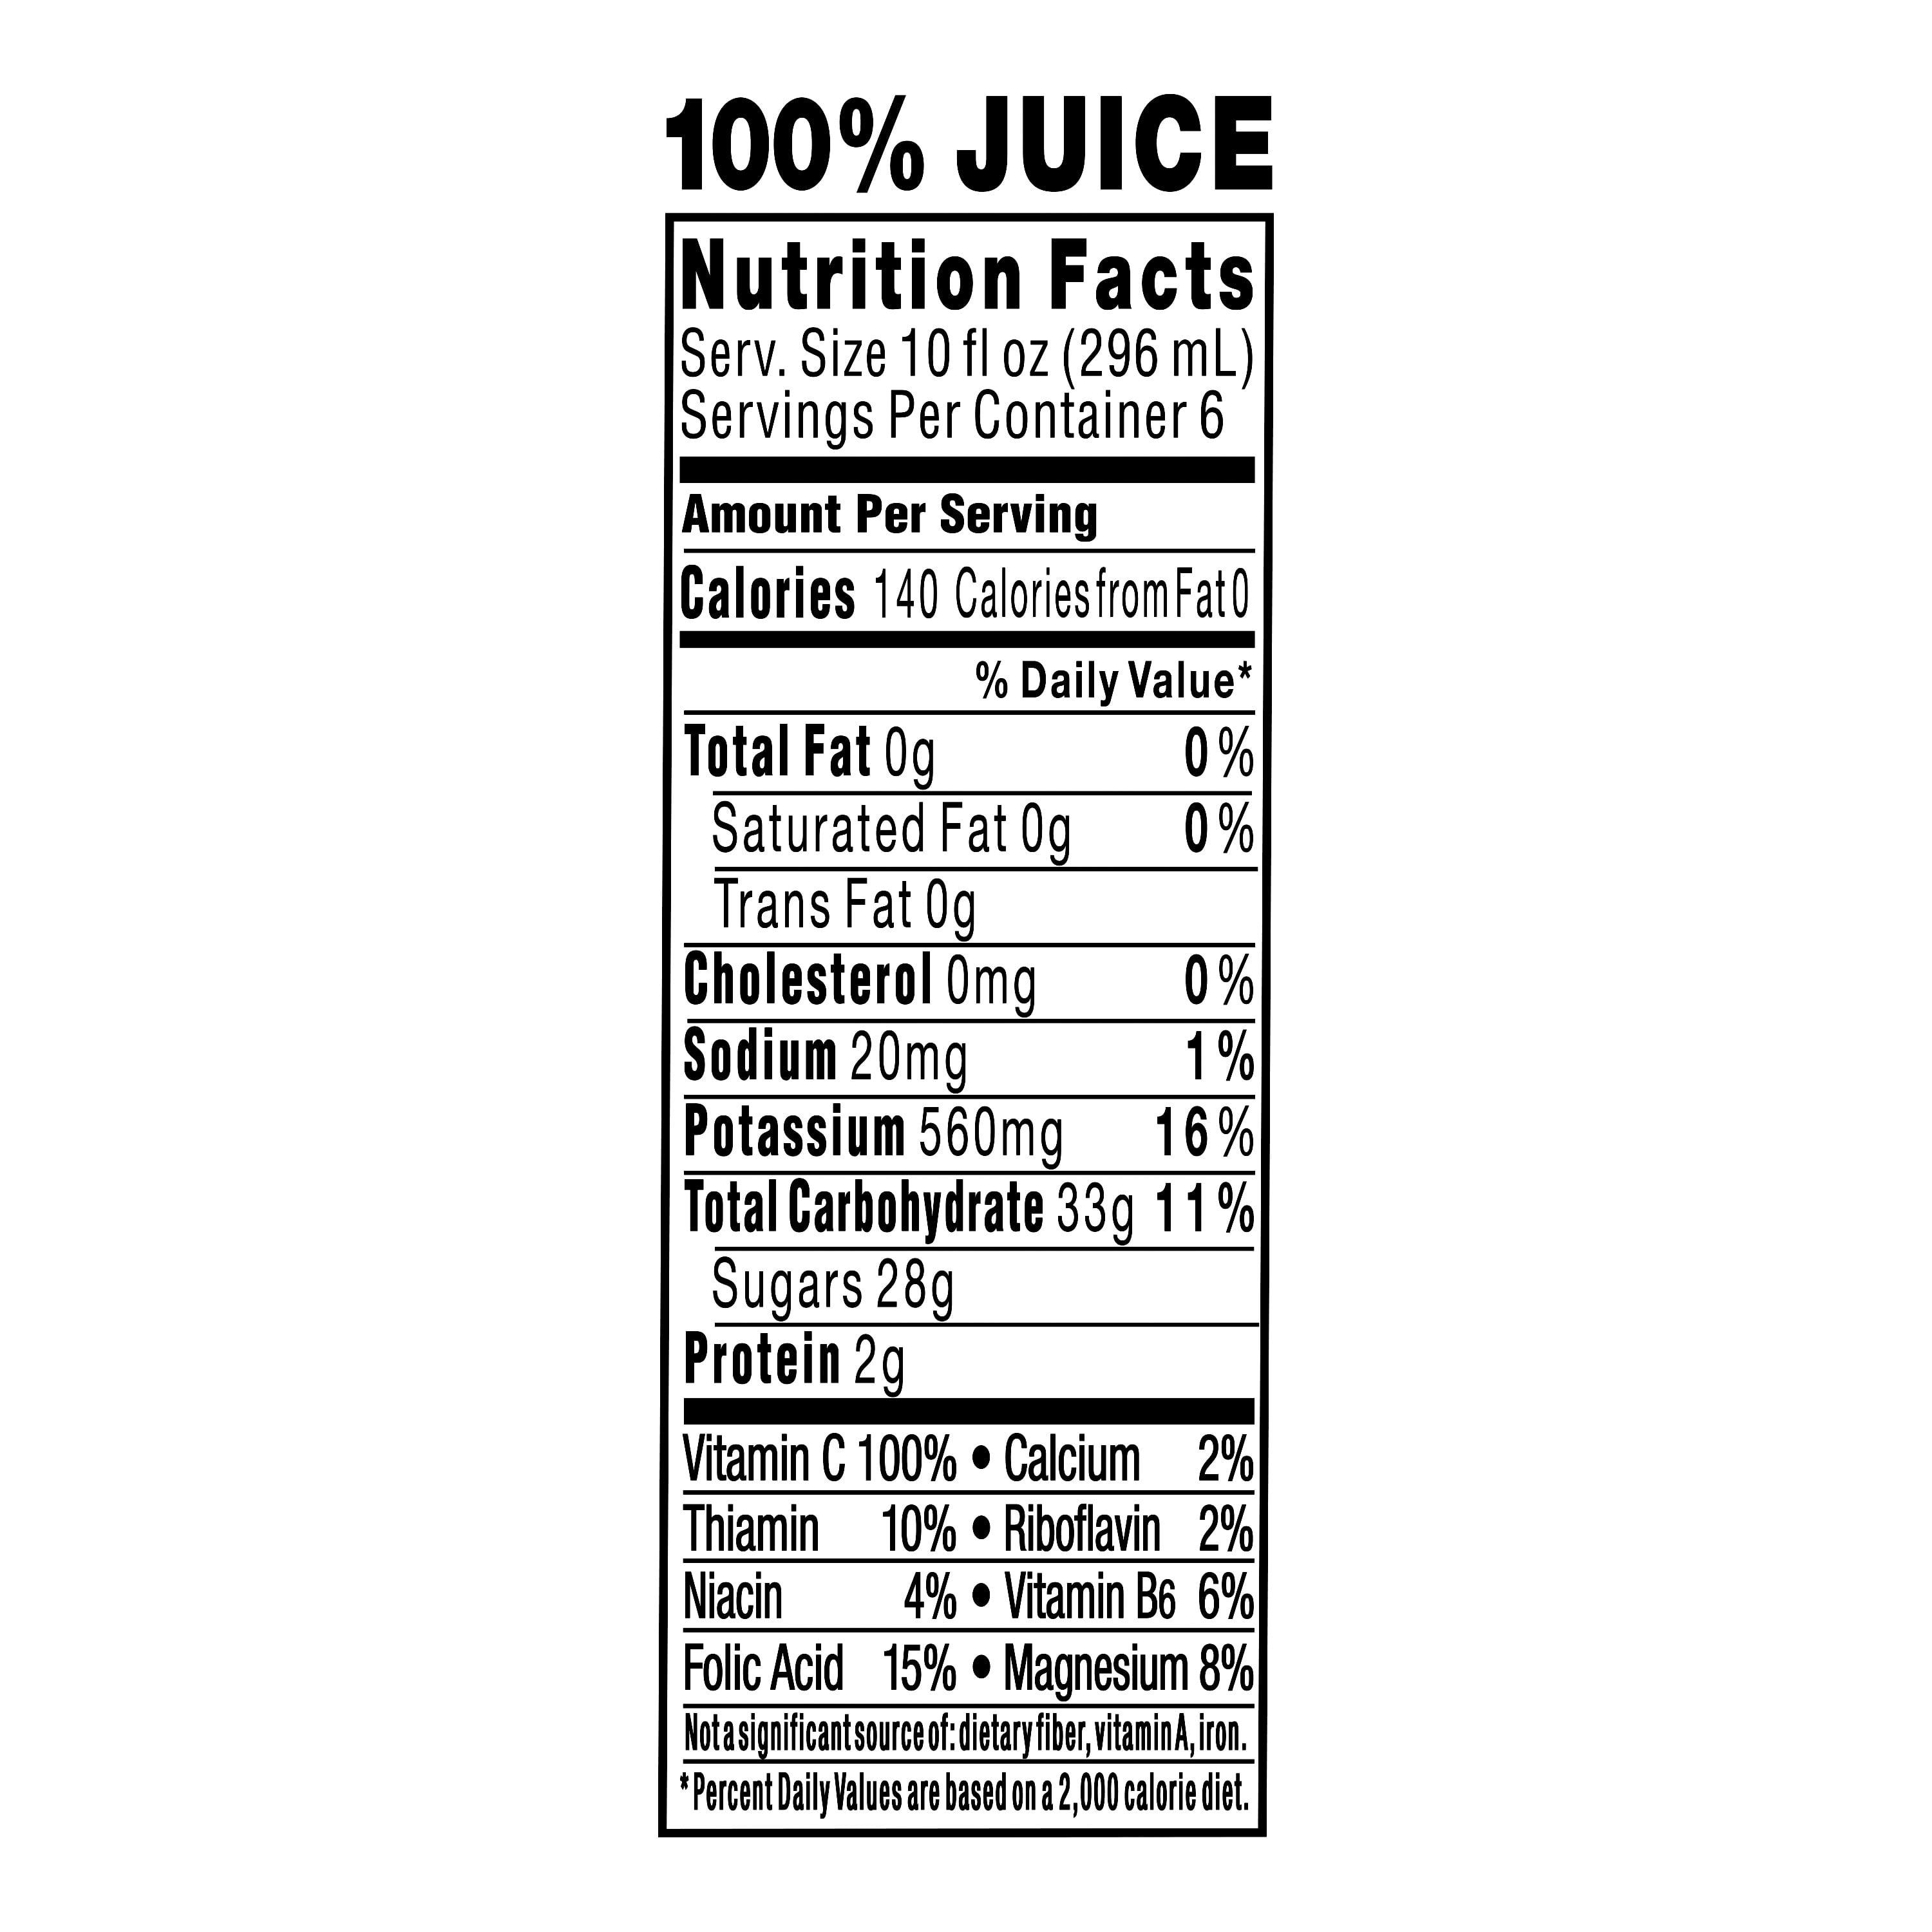 tropicana apple juice ingredients